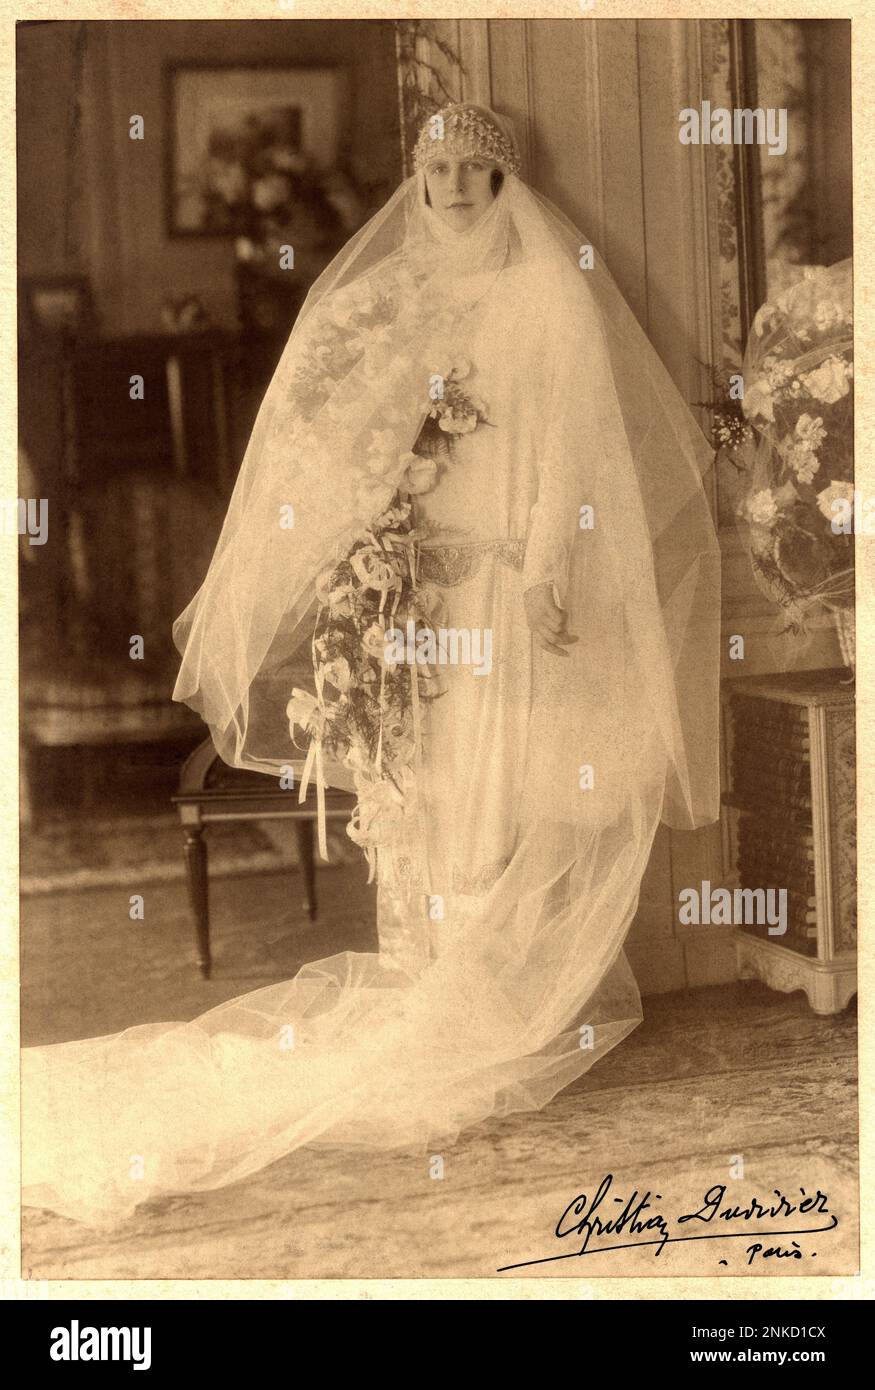 1920 Ca , Paris , FRANKREICH : eine edle Frau in Hochzeitskleidung . Foto: Christian Duvivier , Paris . Das Foto Duvivier war der Vater des berühmtesten französischen Regisseurs Julien Duvivier ( 1896 - 1967 ) - EHE - MATRIMONIO - NOZZE - abito da SPOSA - HOCHZEITSKLEID PARTY - BRAUT - Cerimonia - FOTO STORICHE - GESCHICHTSFOTOS - STOCK - SVIZZERA - Hut - cappello - XX. JAHRHUNDERT - NOVECENTO - Hut - cappello Cuffia - Tulle - Strascico - FAMIGLIA - FAMILIE - PARENTI - Festa - Party - Ricevimento - STOCK - Velo - Schleier - Blumen - fiori - fiore - Rosen - rosa - Rose - PARIGI Stockfoto